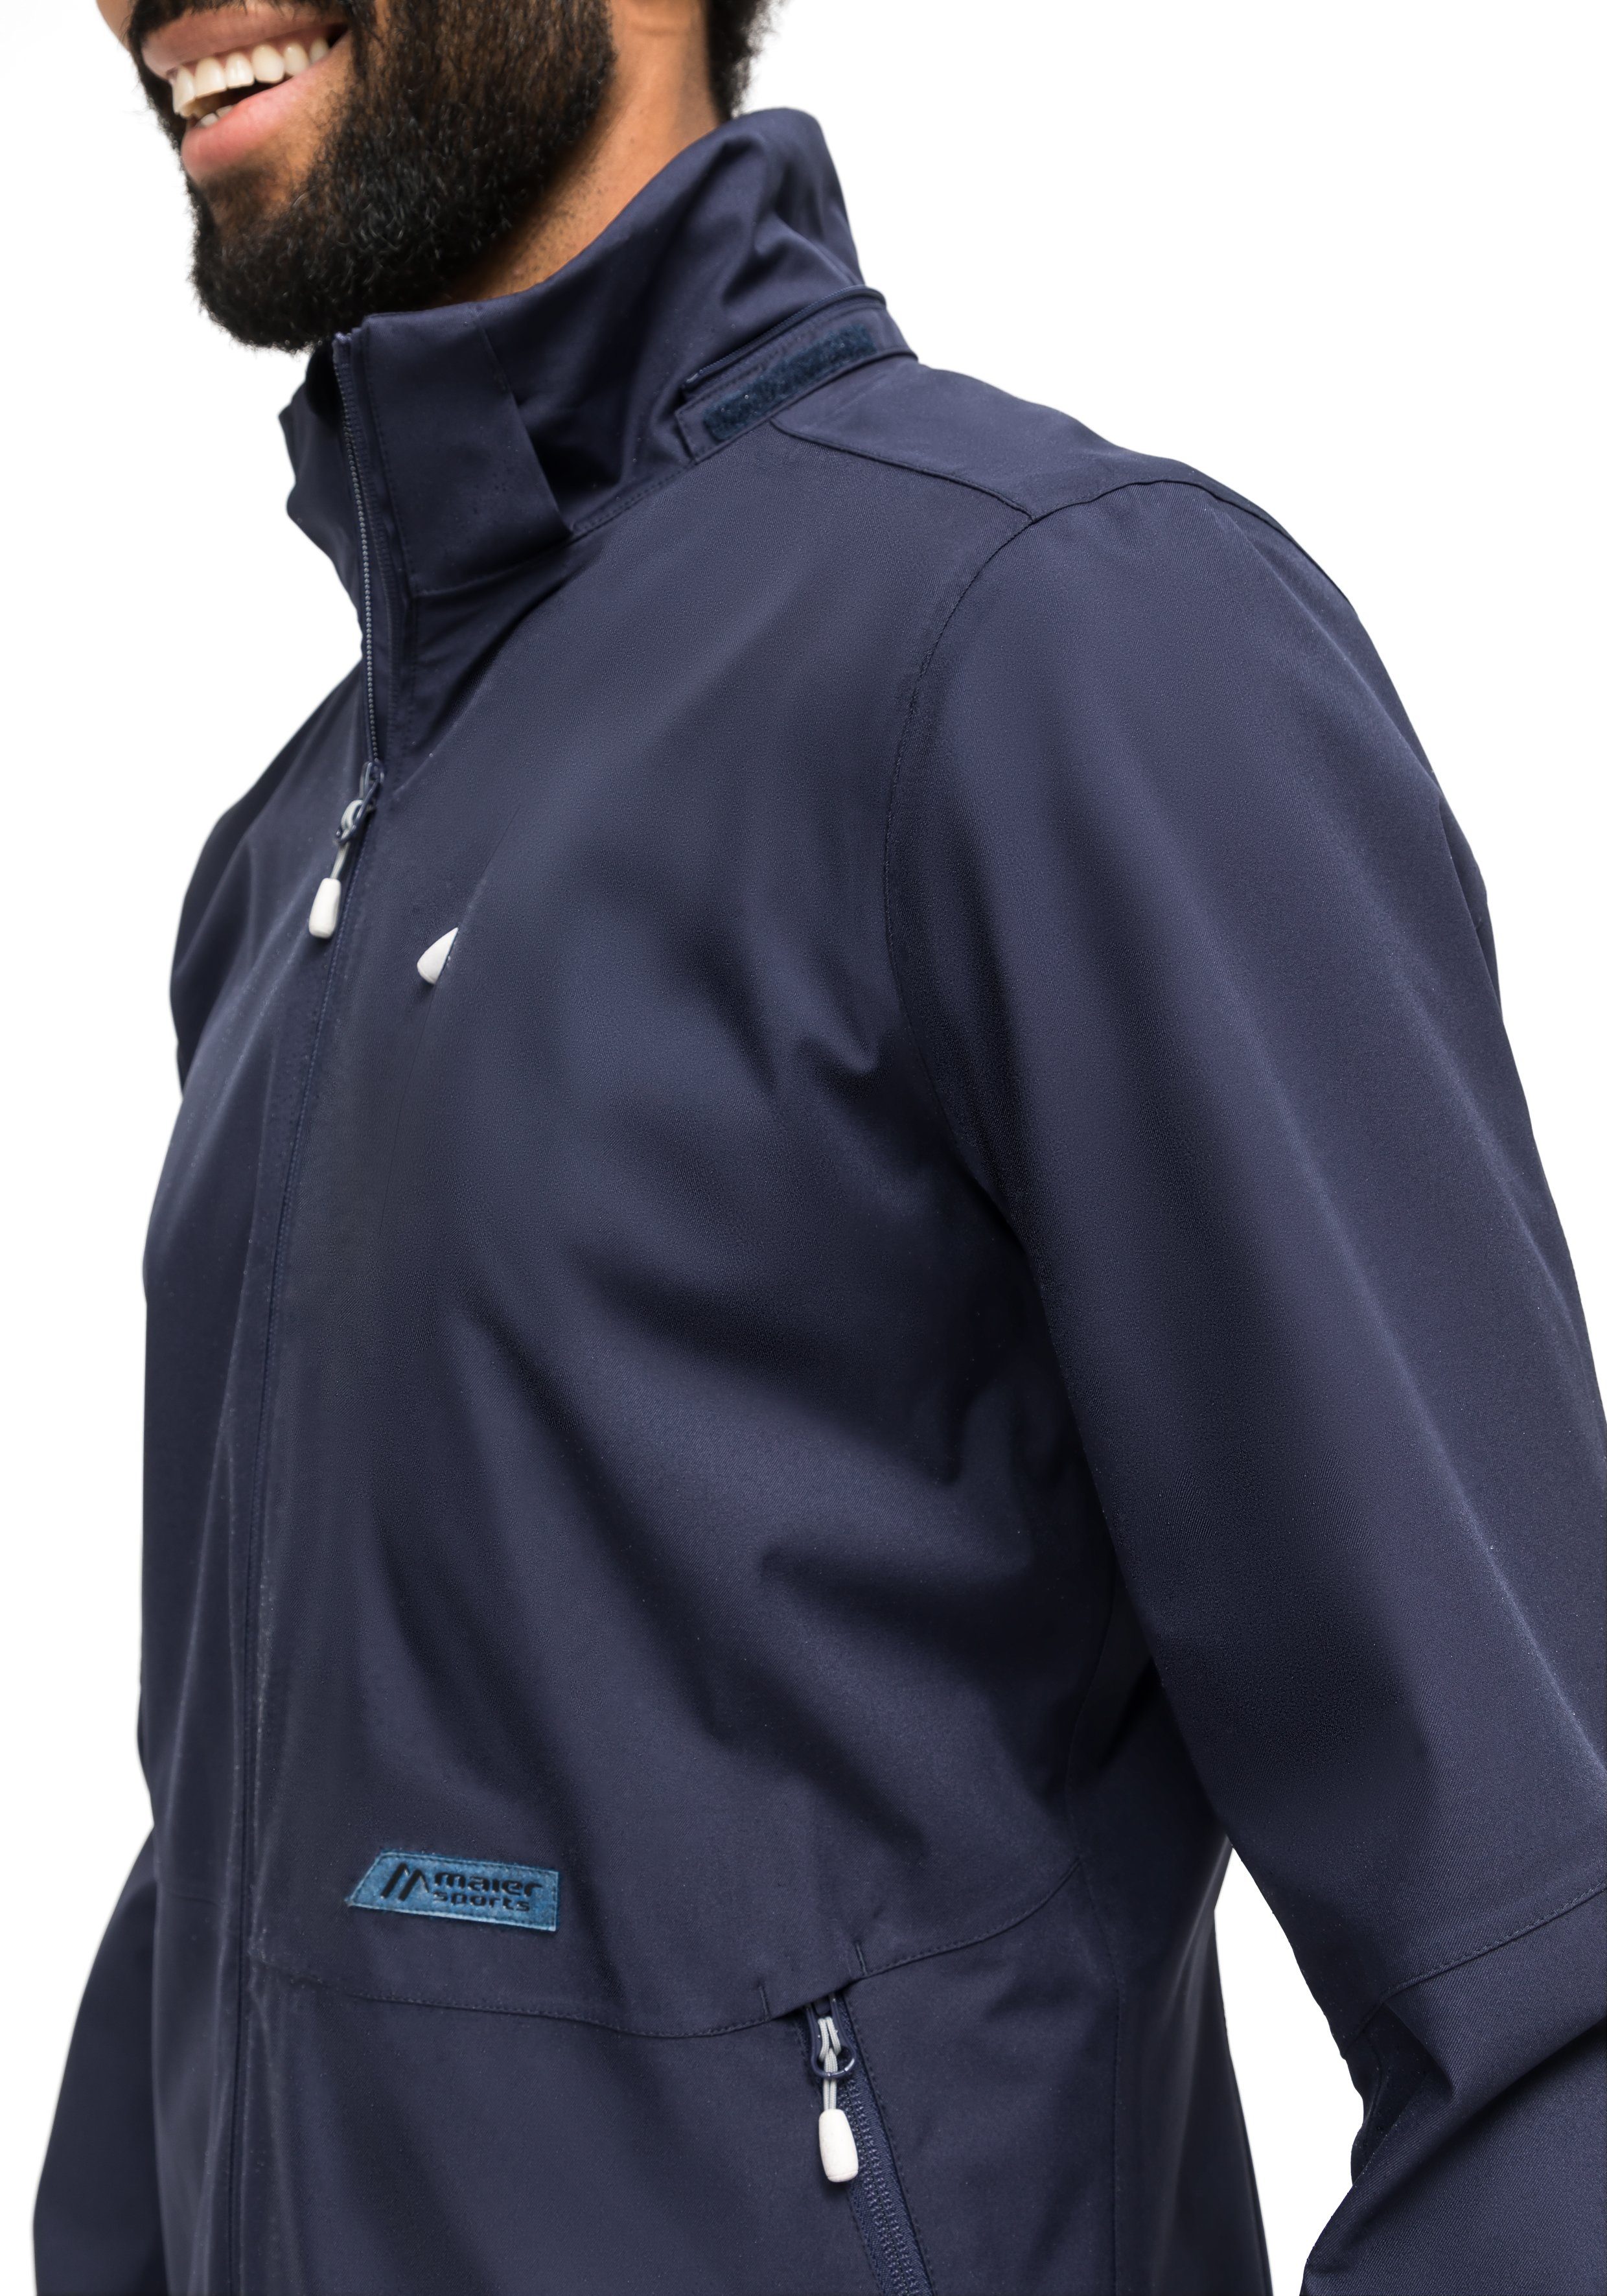 Funktionsjacke Sports Outdoorjacke M dunkelblau Maier aus 2.0 Pro Clima nachhaltigem Sportliche Material